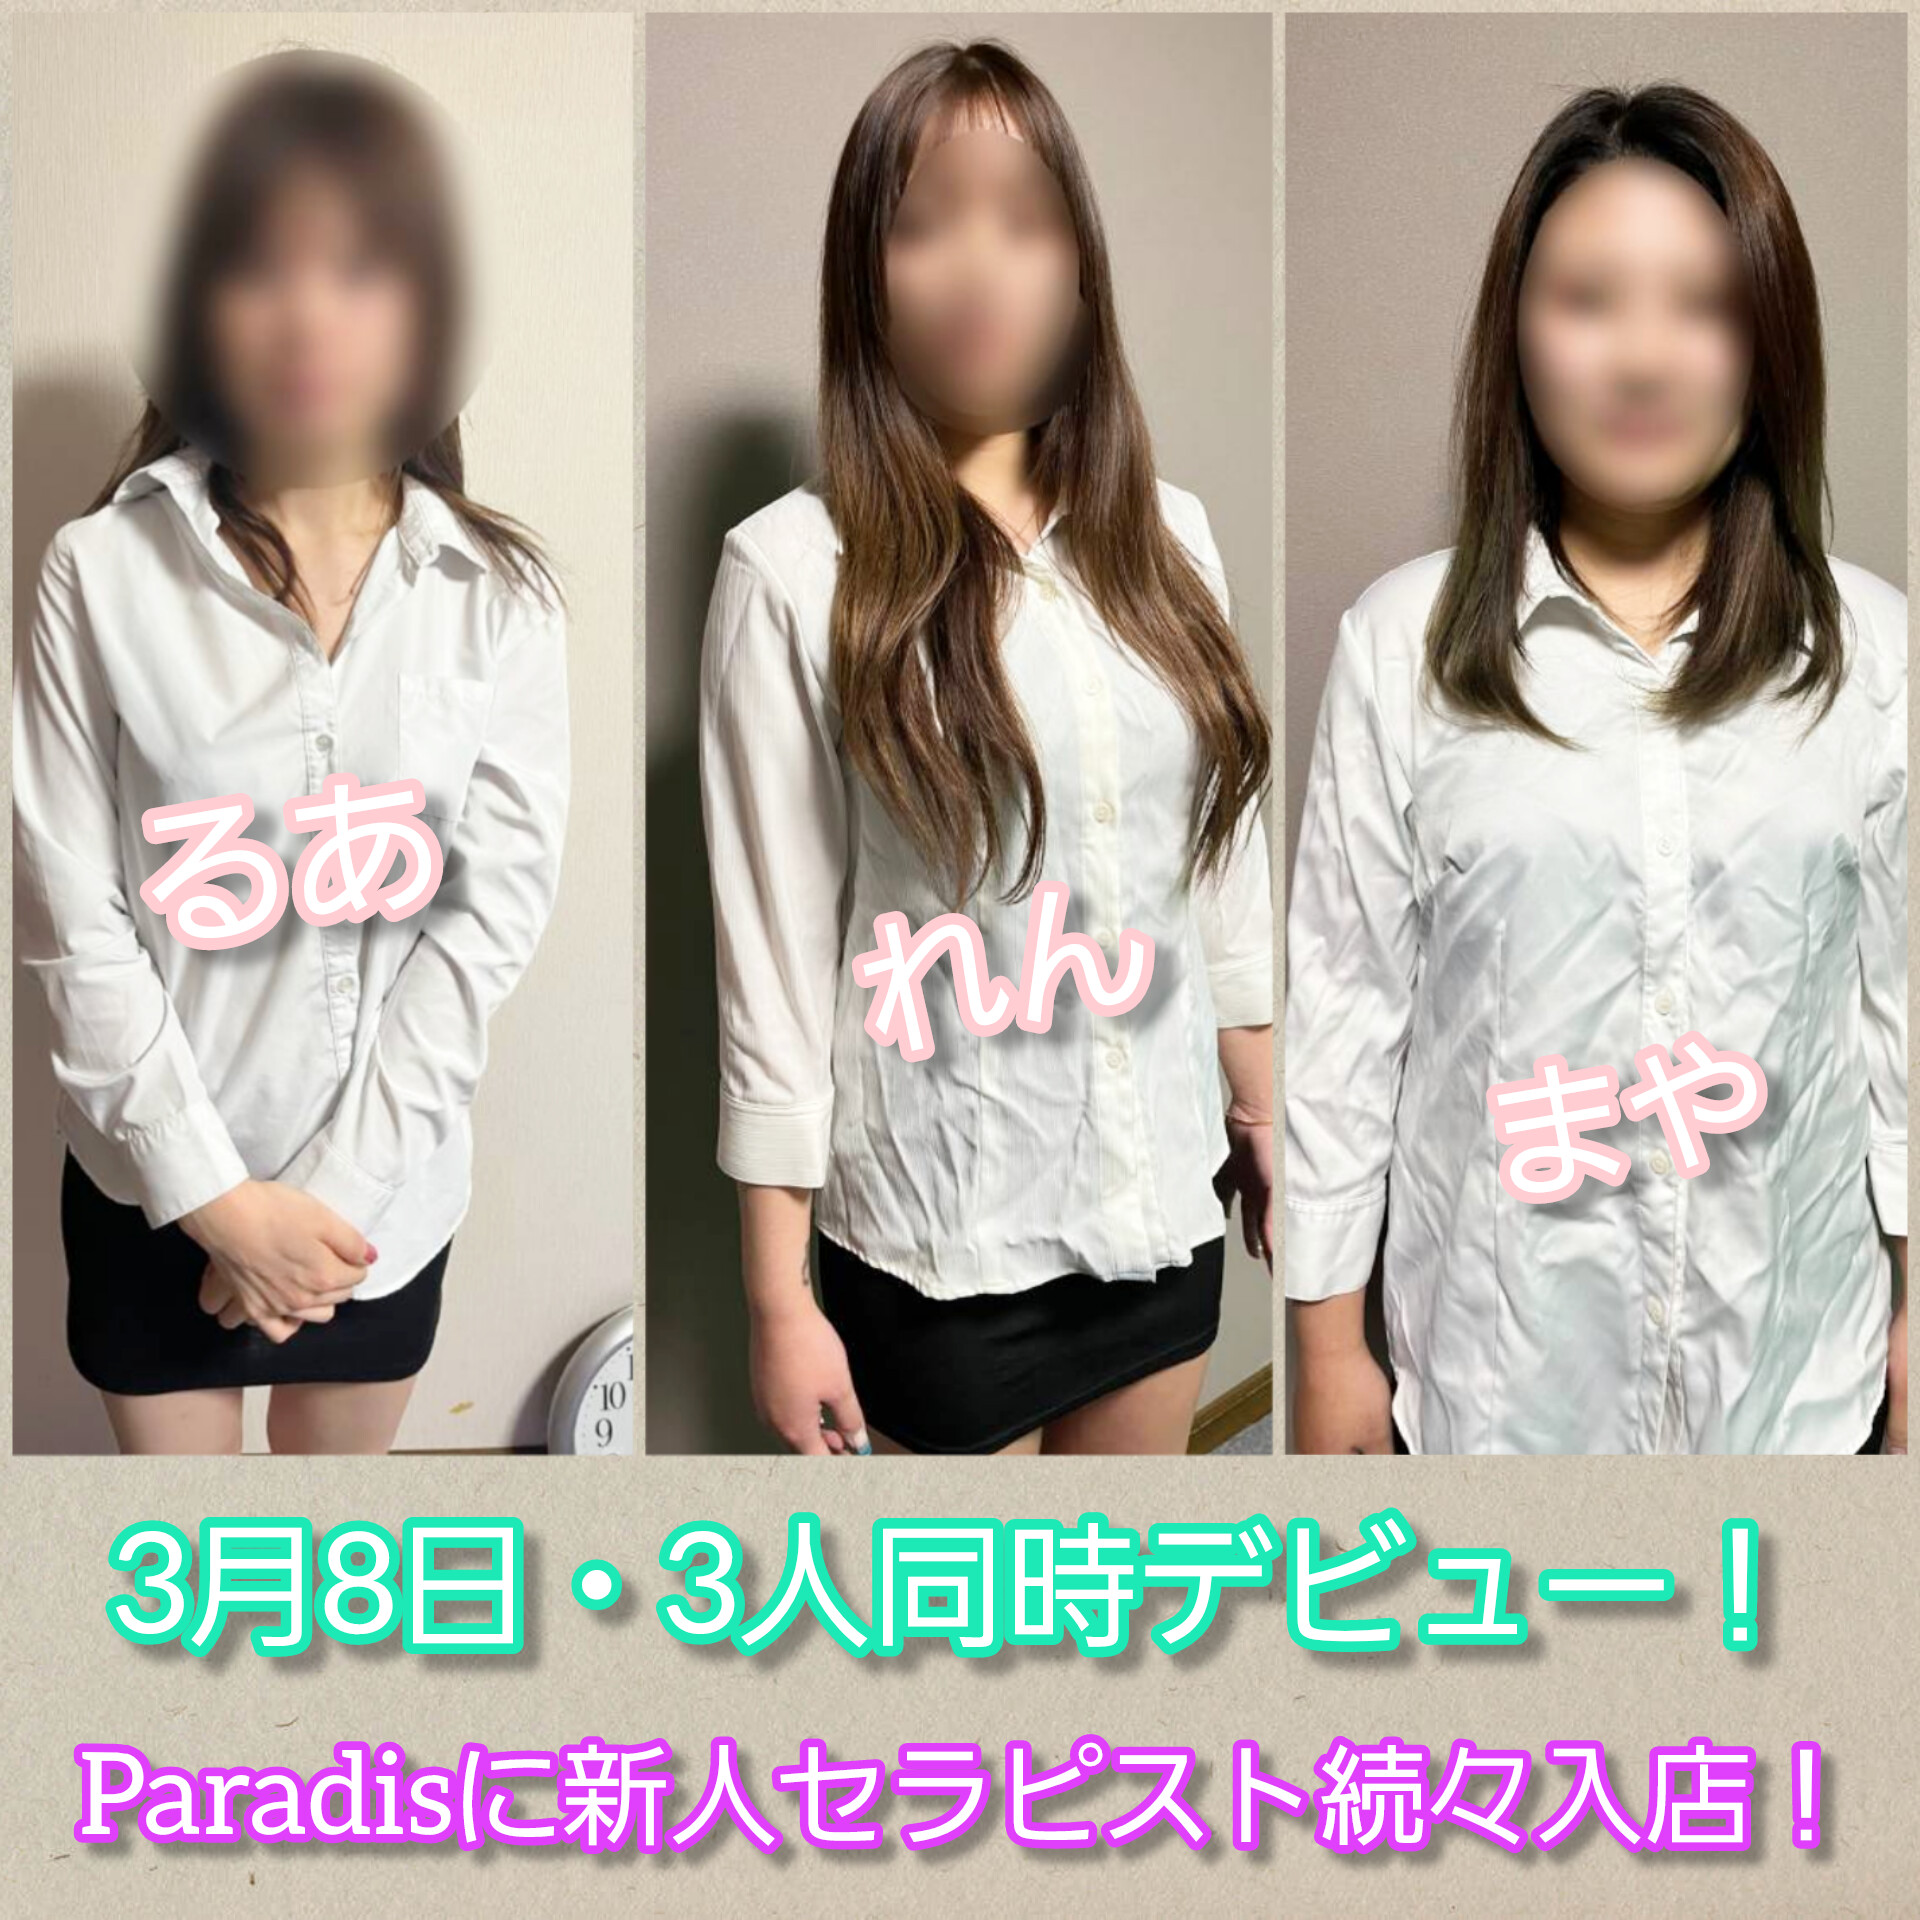  Paradis-パラディ-（3人同時デビュー）